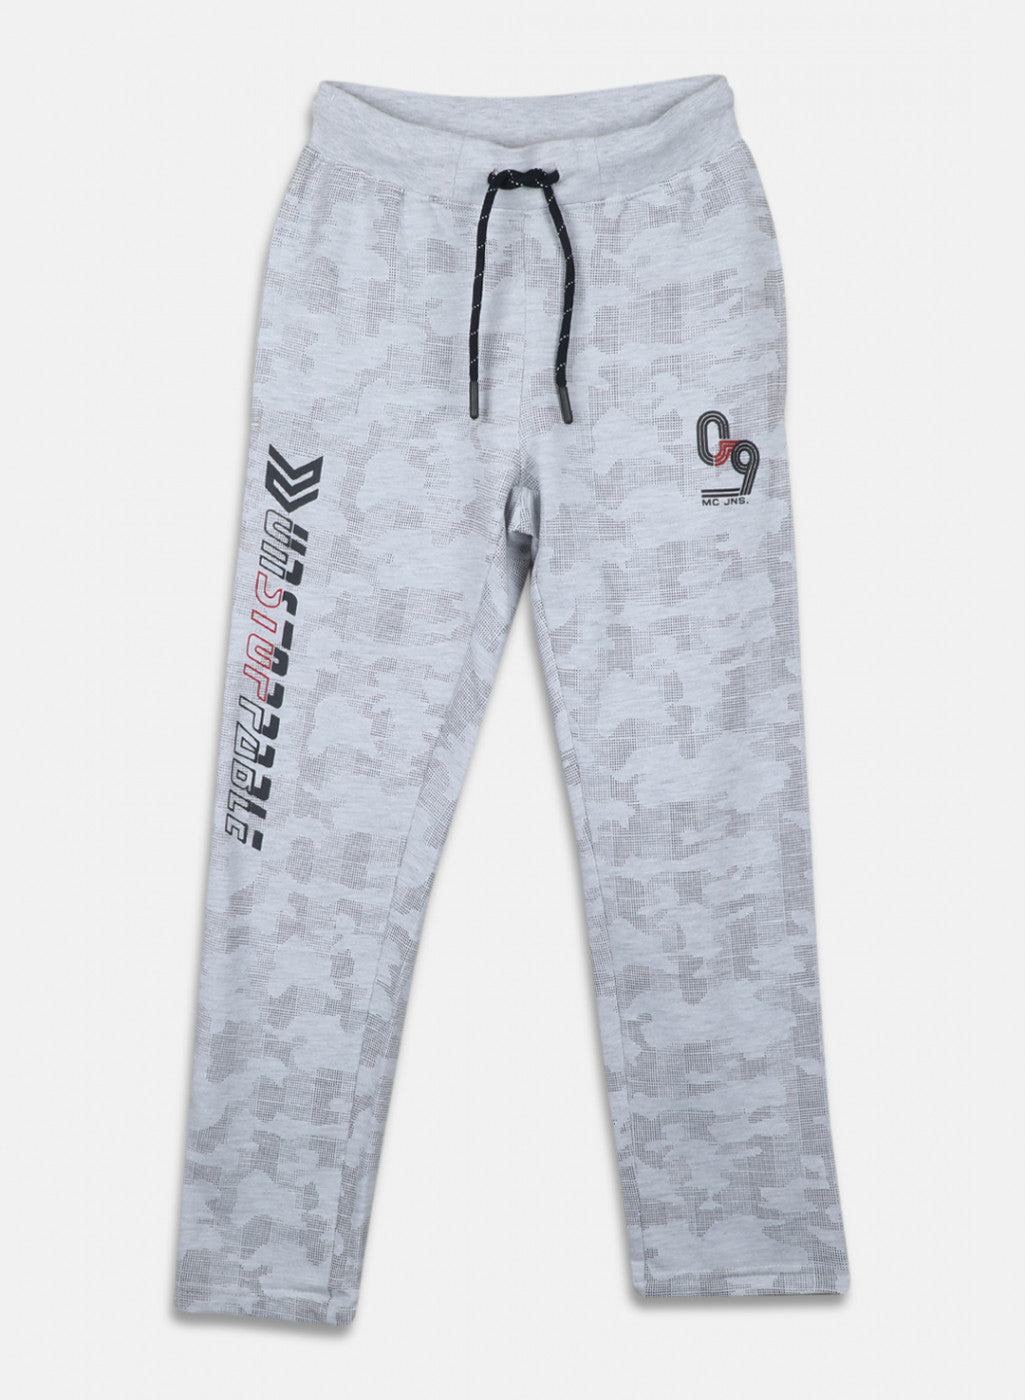 Men's sweatpants - dark grey P735   - Men's clothing online